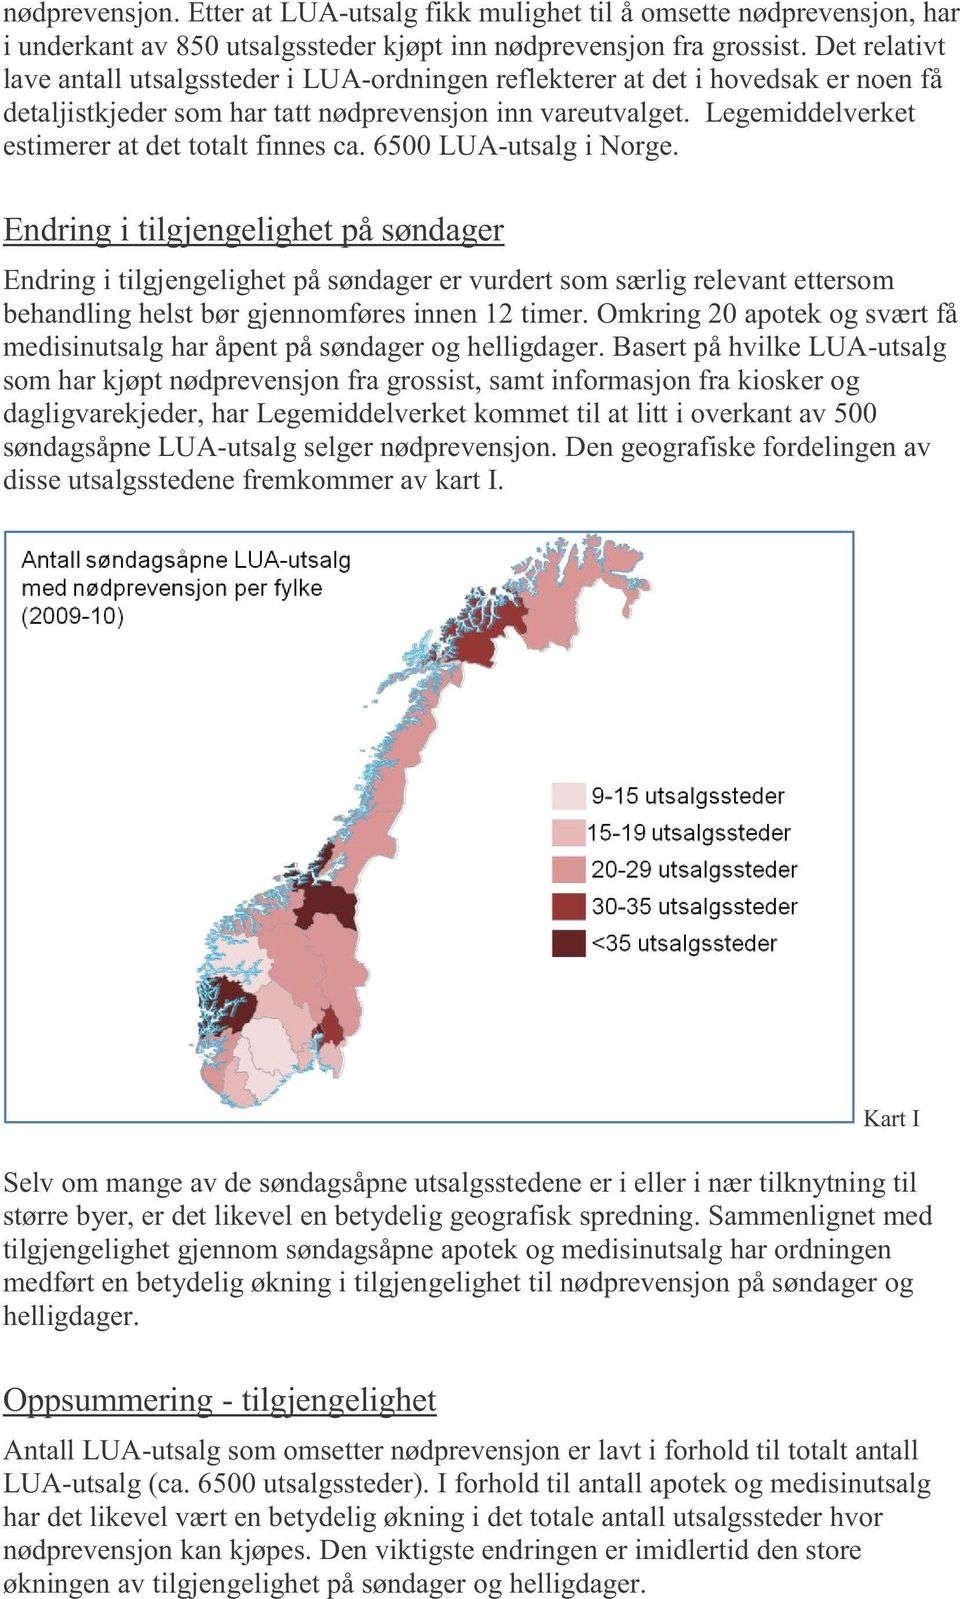 Legemiddelverket estimerer at det totalt finnes ca. 6500 LUA - utsalg i Norge.